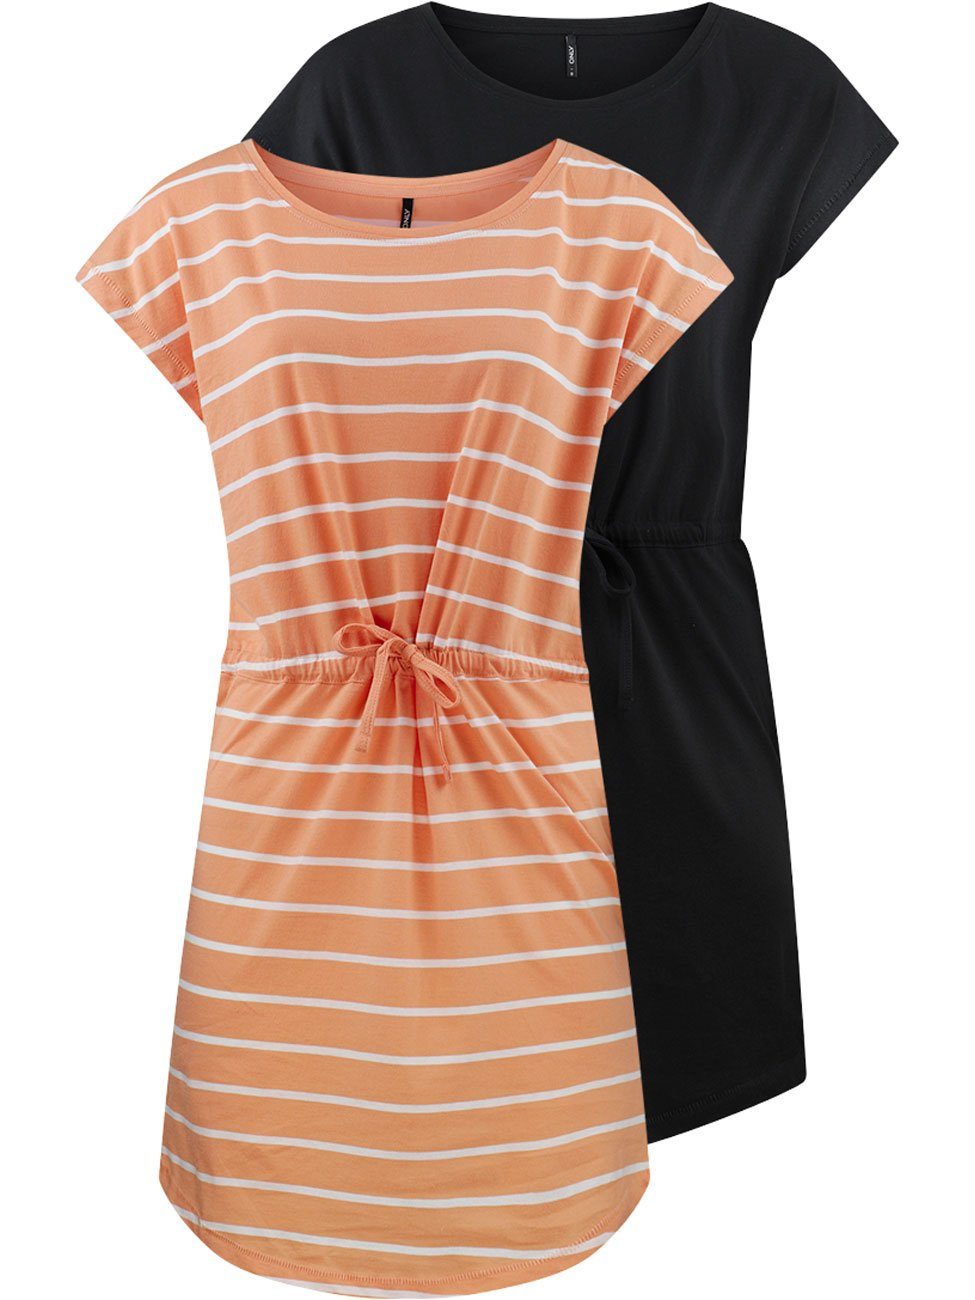 onlMAY ONLY Sommerkleid Kleid Damen 100% aus Mini Dress A-Linie Baumwolle S/S